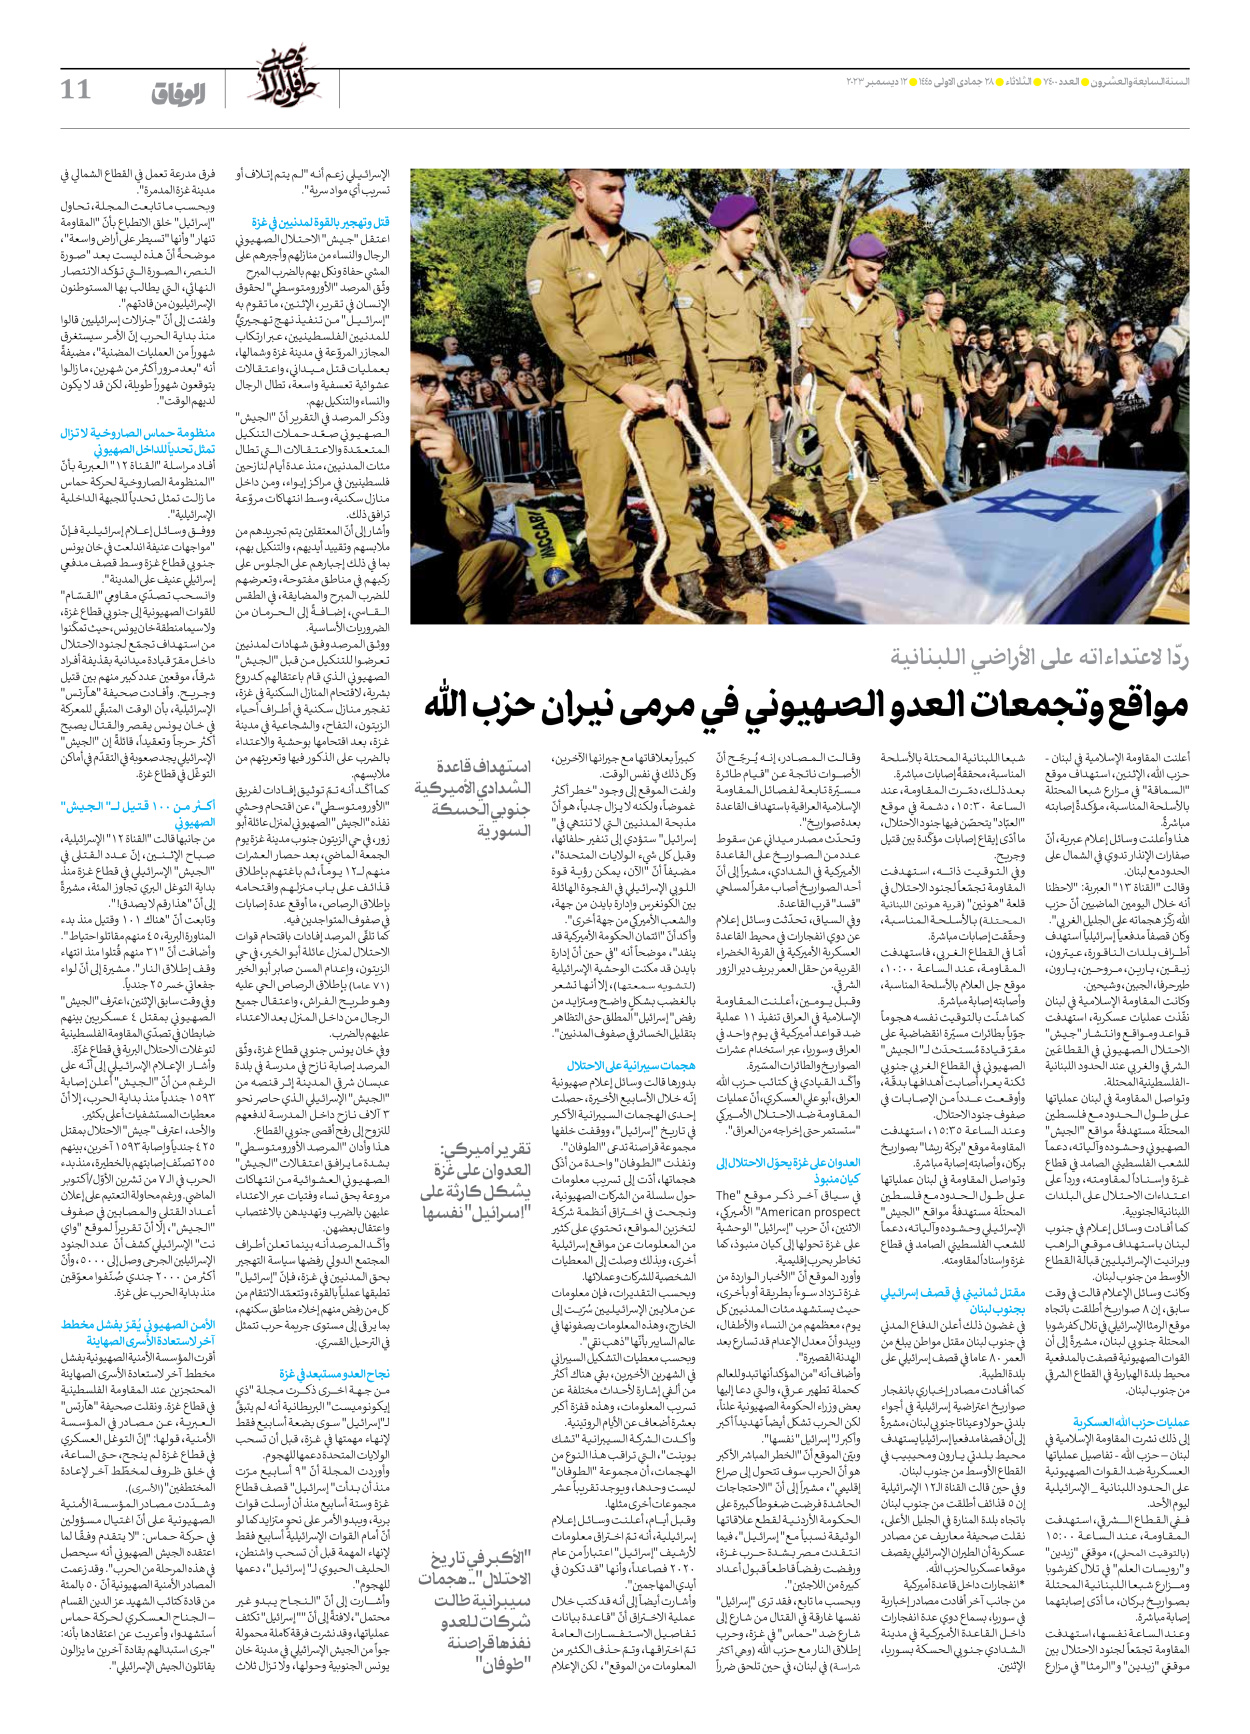 صحیفة ایران الدولیة الوفاق - العدد سبعة آلاف وأربعمائة - ١٢ ديسمبر ٢٠٢٣ - الصفحة ۱۱